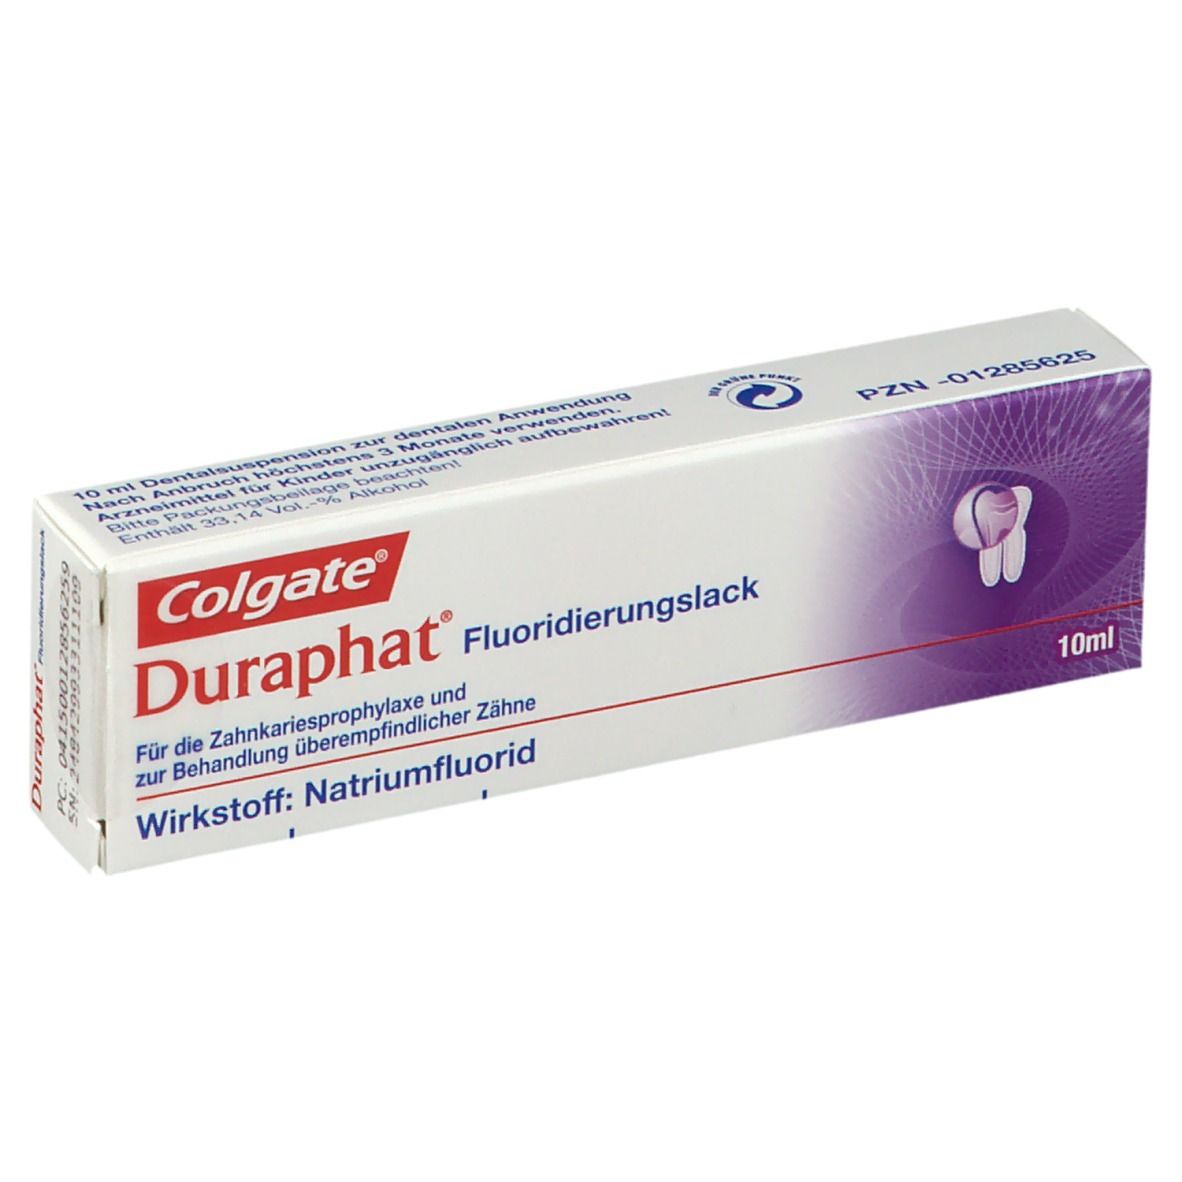 Colgate Duraphat Fluoridierungslack